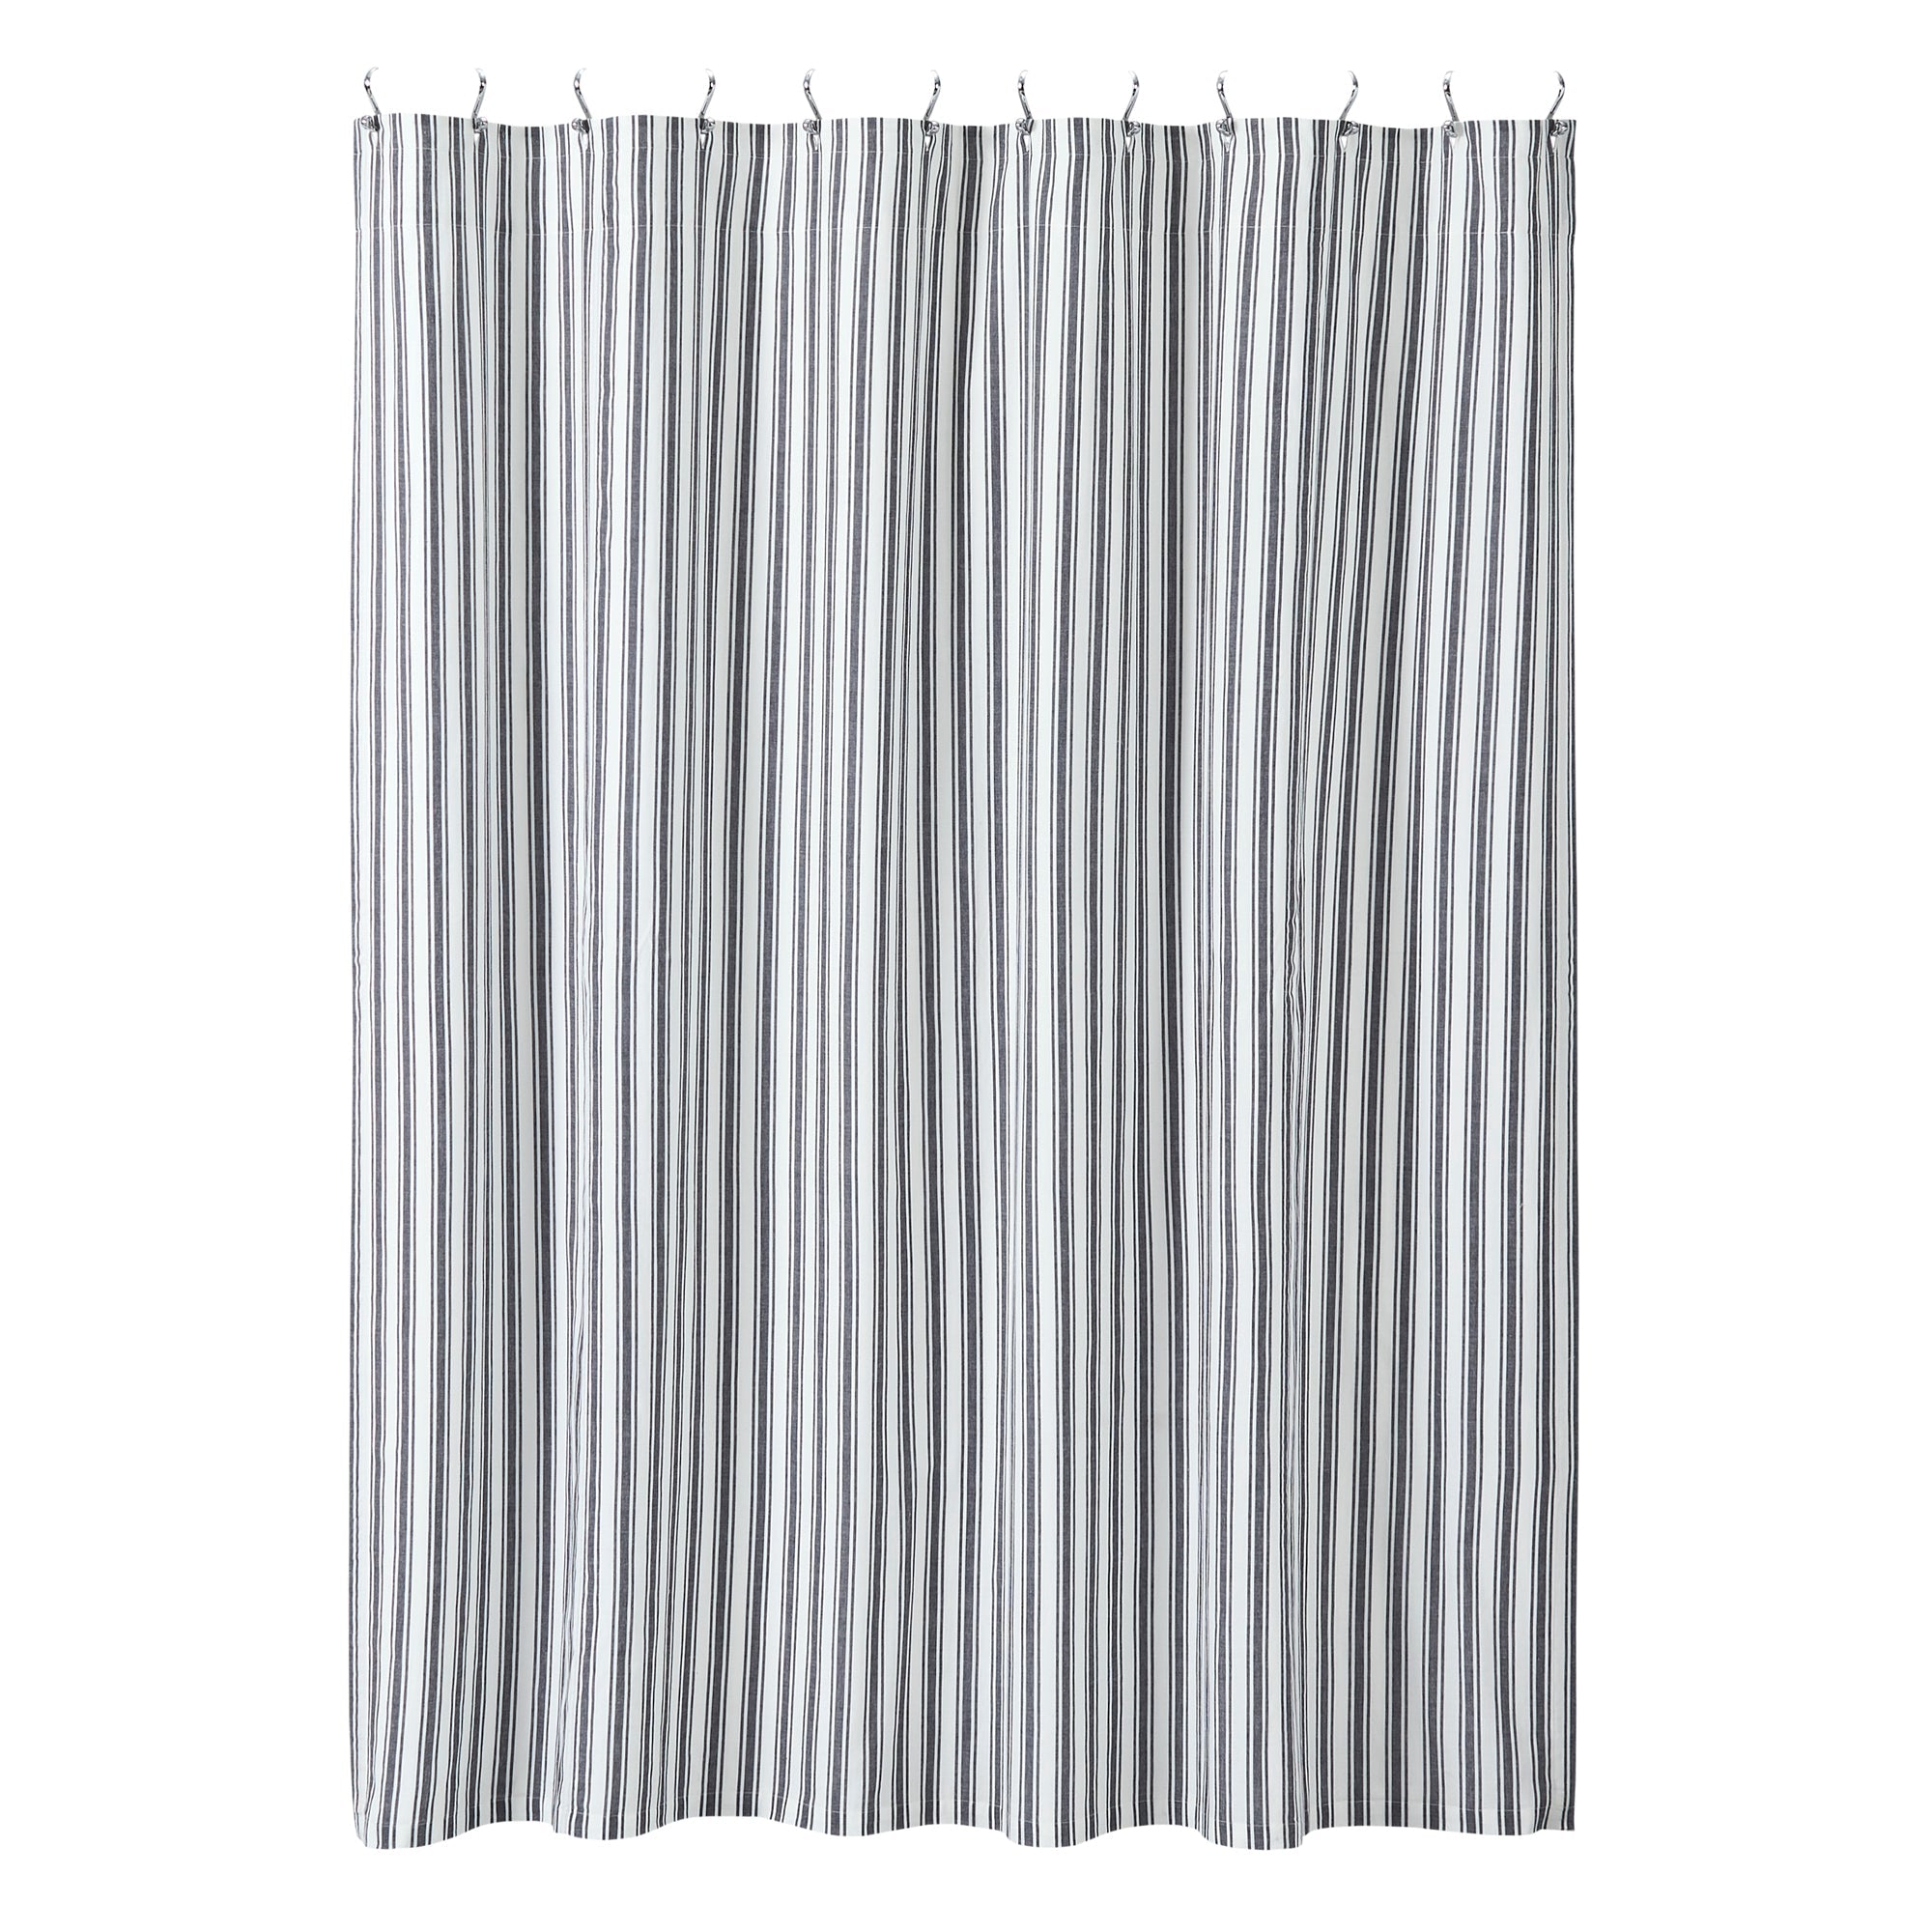 Sawyer Mill Black Ticking Stripe Shower Curtain 72x72 VHC Brands